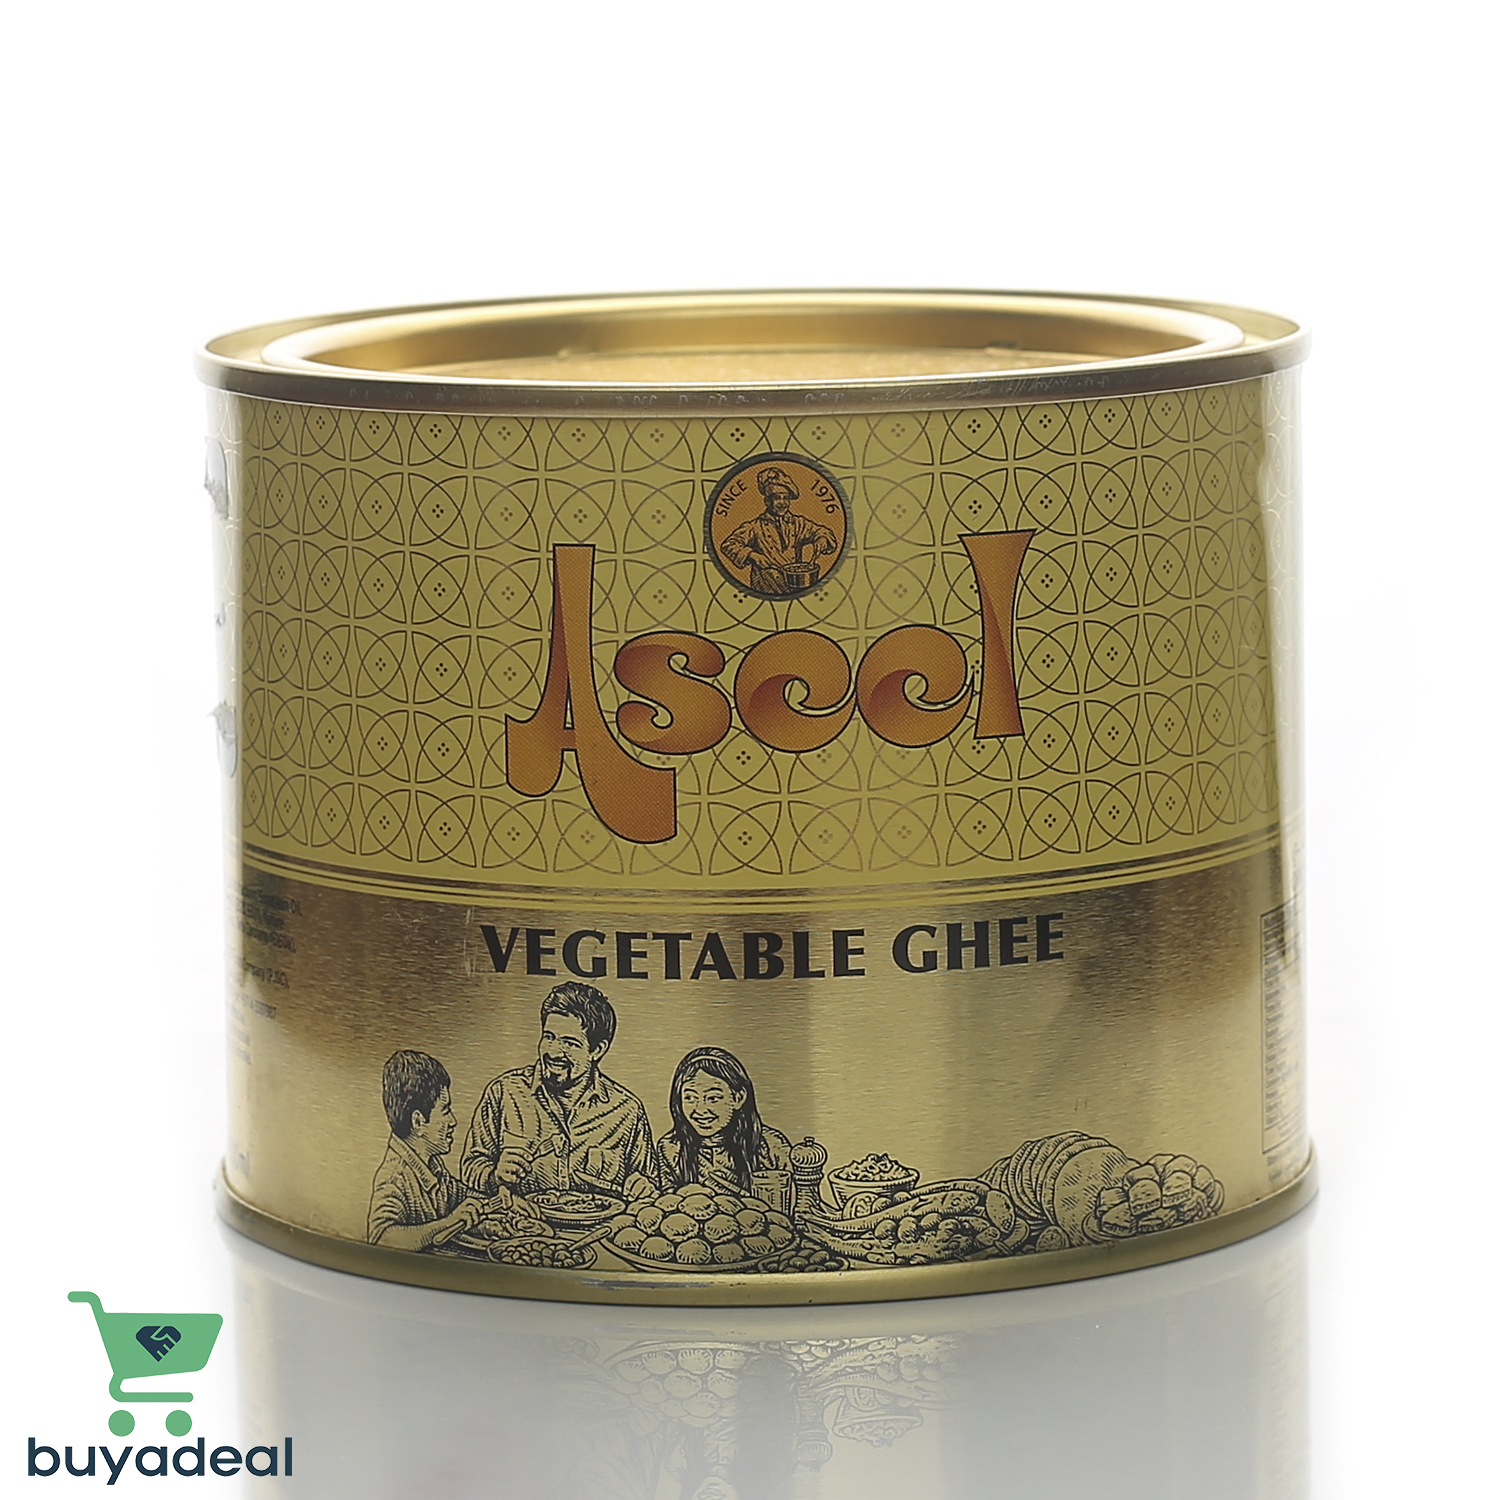 Buyadeal Product Aseel Vegetable Ghee, 500 g